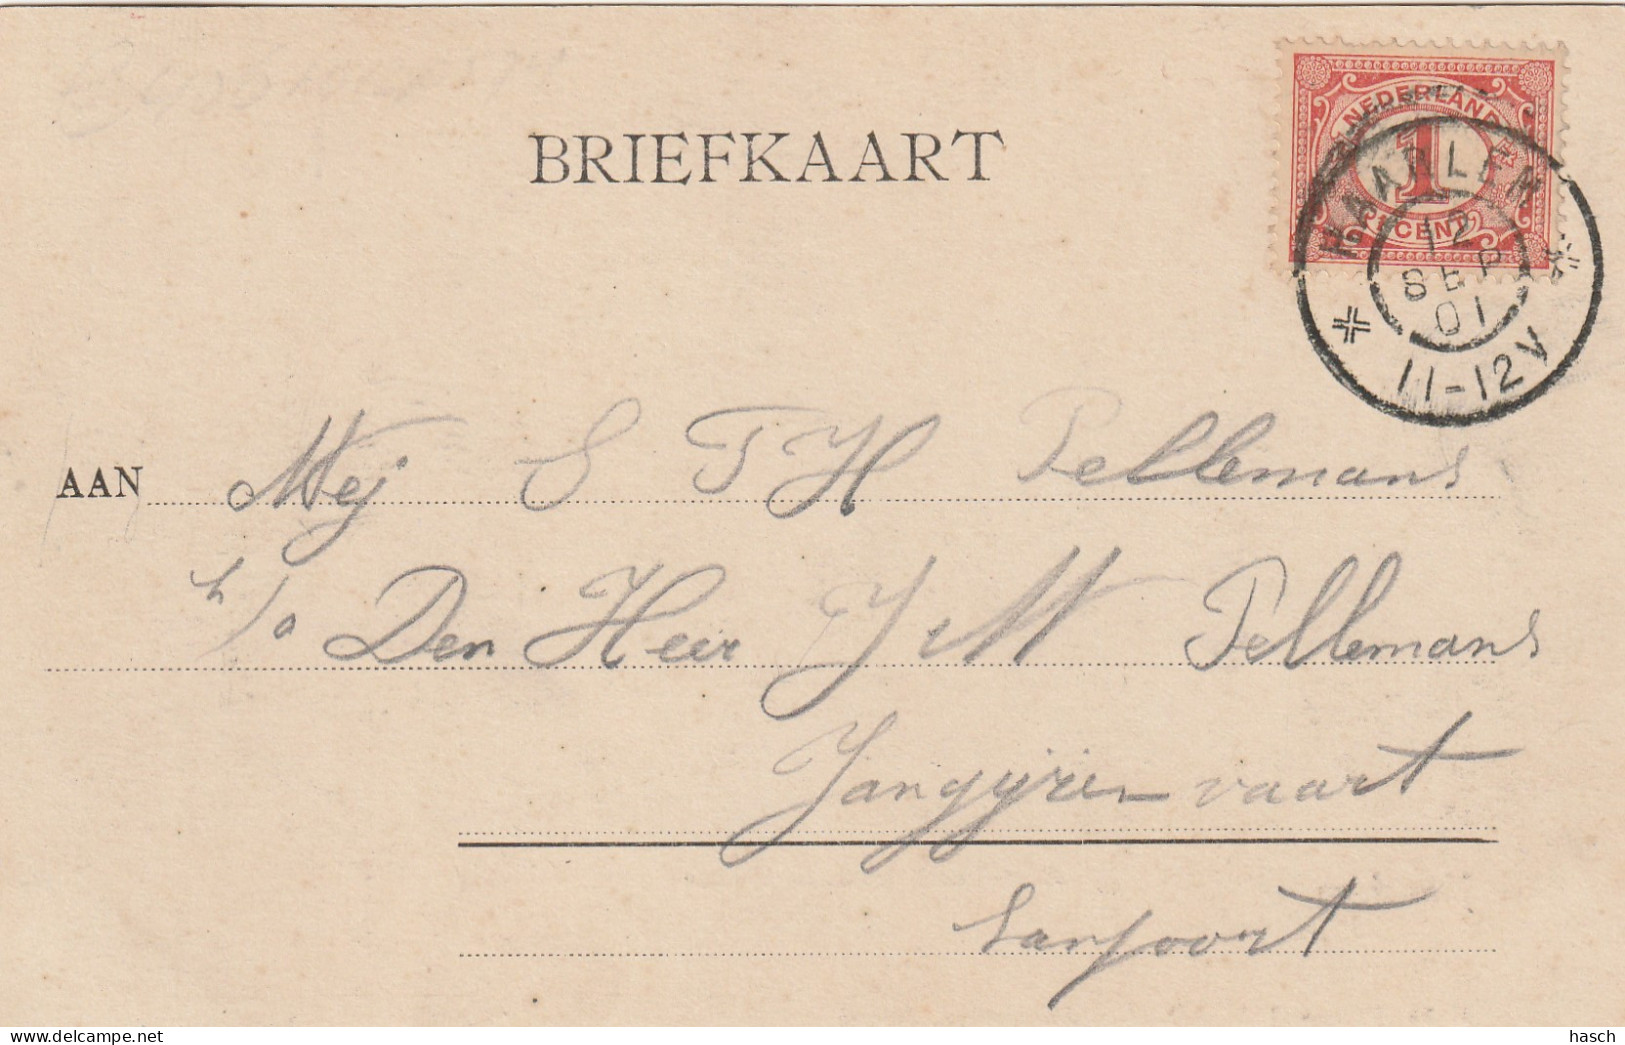 4892190Haarlem, Standbeeld Laurens Koster. 1901.  - Haarlem